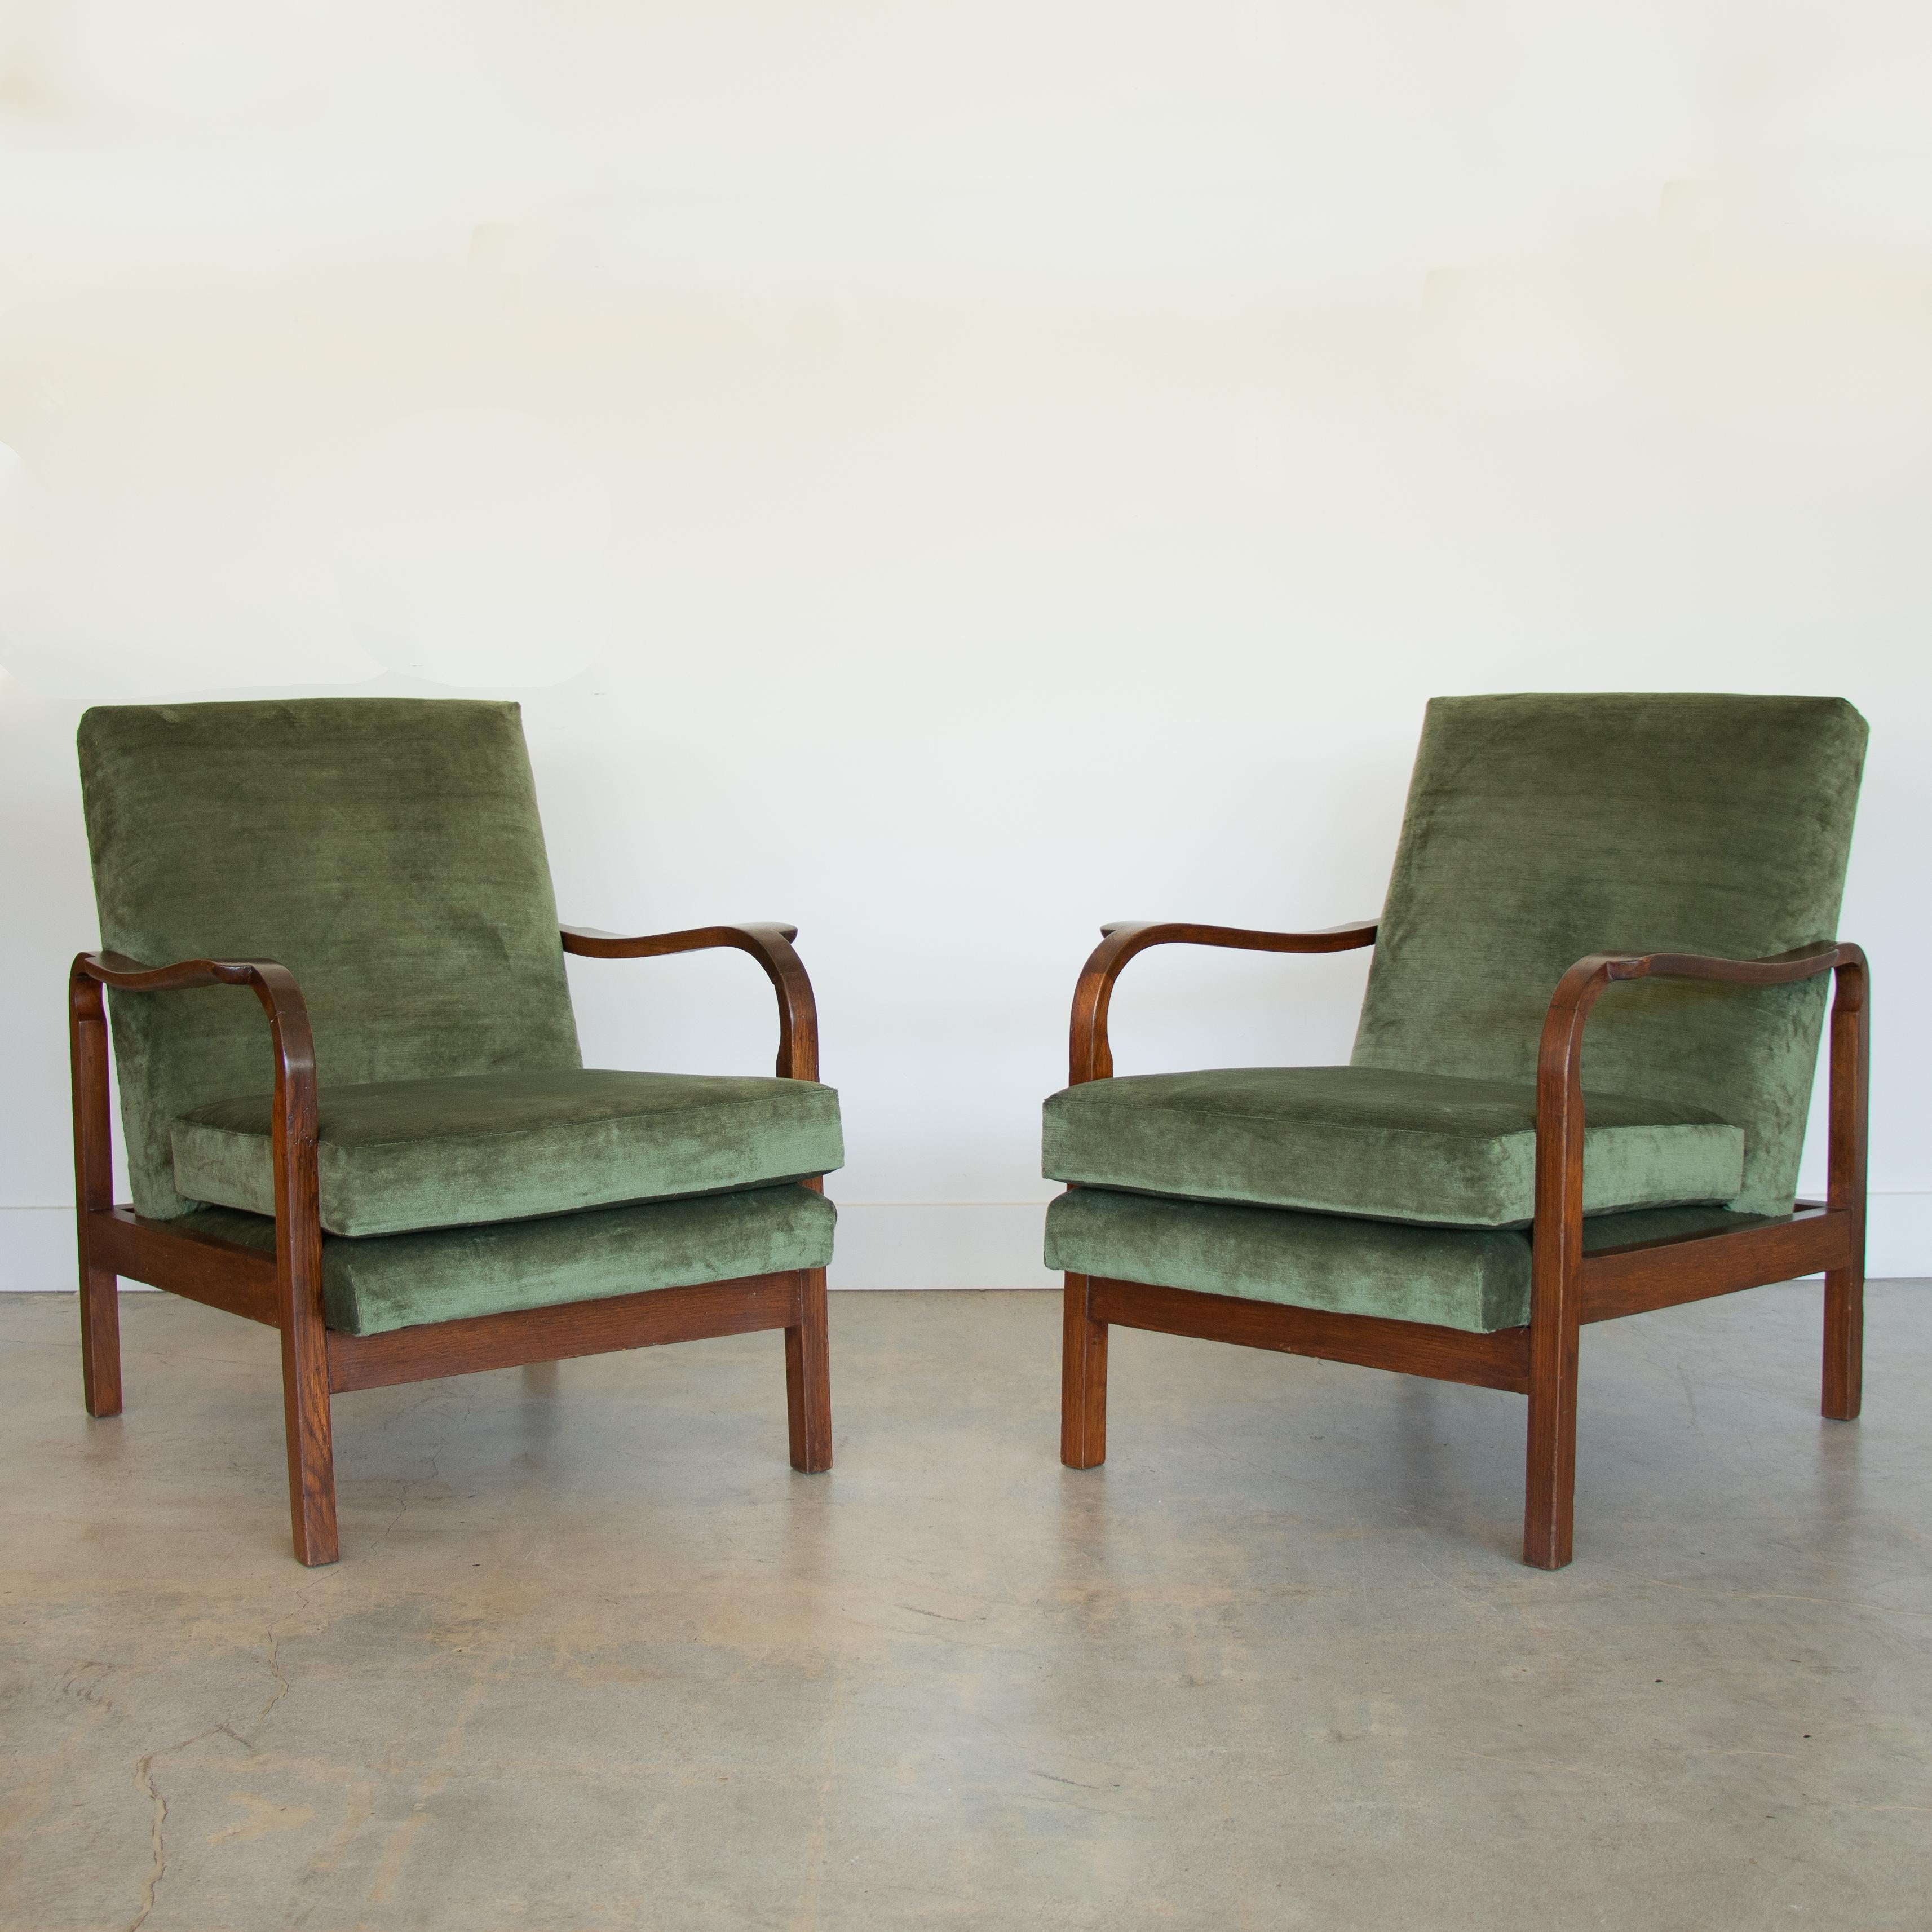 Superbe paire de fauteuils en bois sculpté d'Italie, années 1940. Magnifiques bras en bois sculpté et cadre en bois avec teinture foncée d'origine montrant le grain. La finition d'origine est très ancienne et patinée. Coussins d'assise et de dossier